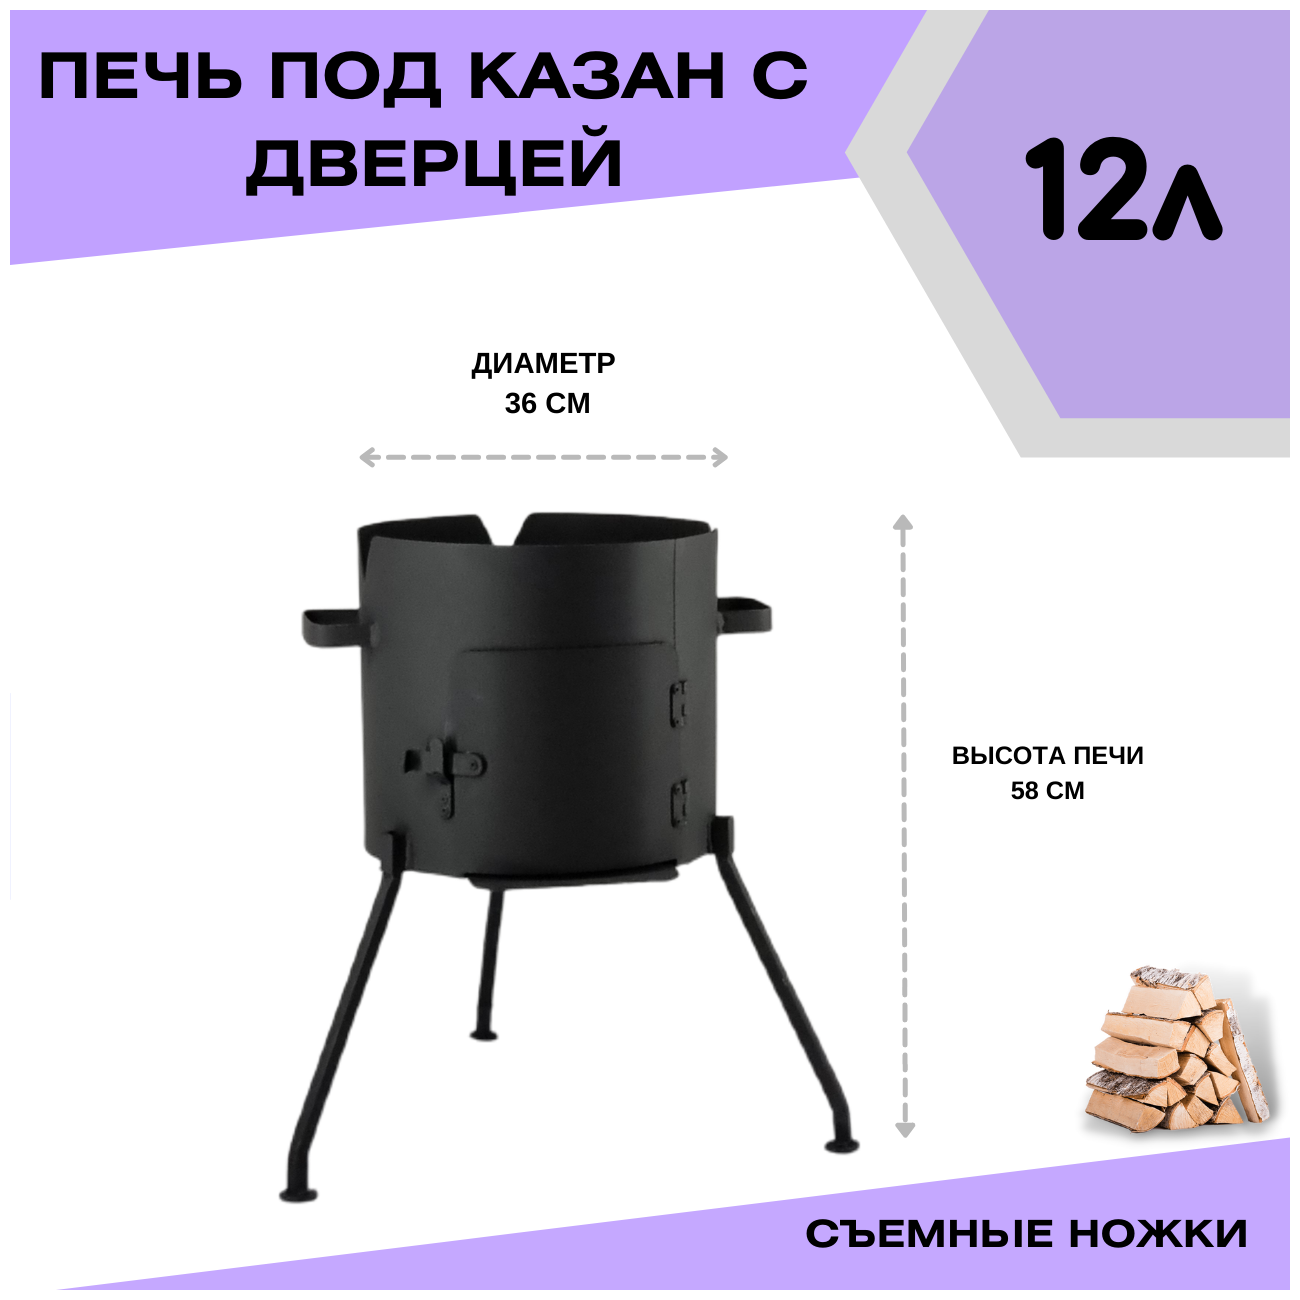 Печка с дверцей под казан 12 литров съемные ножки (разборная) Svargan